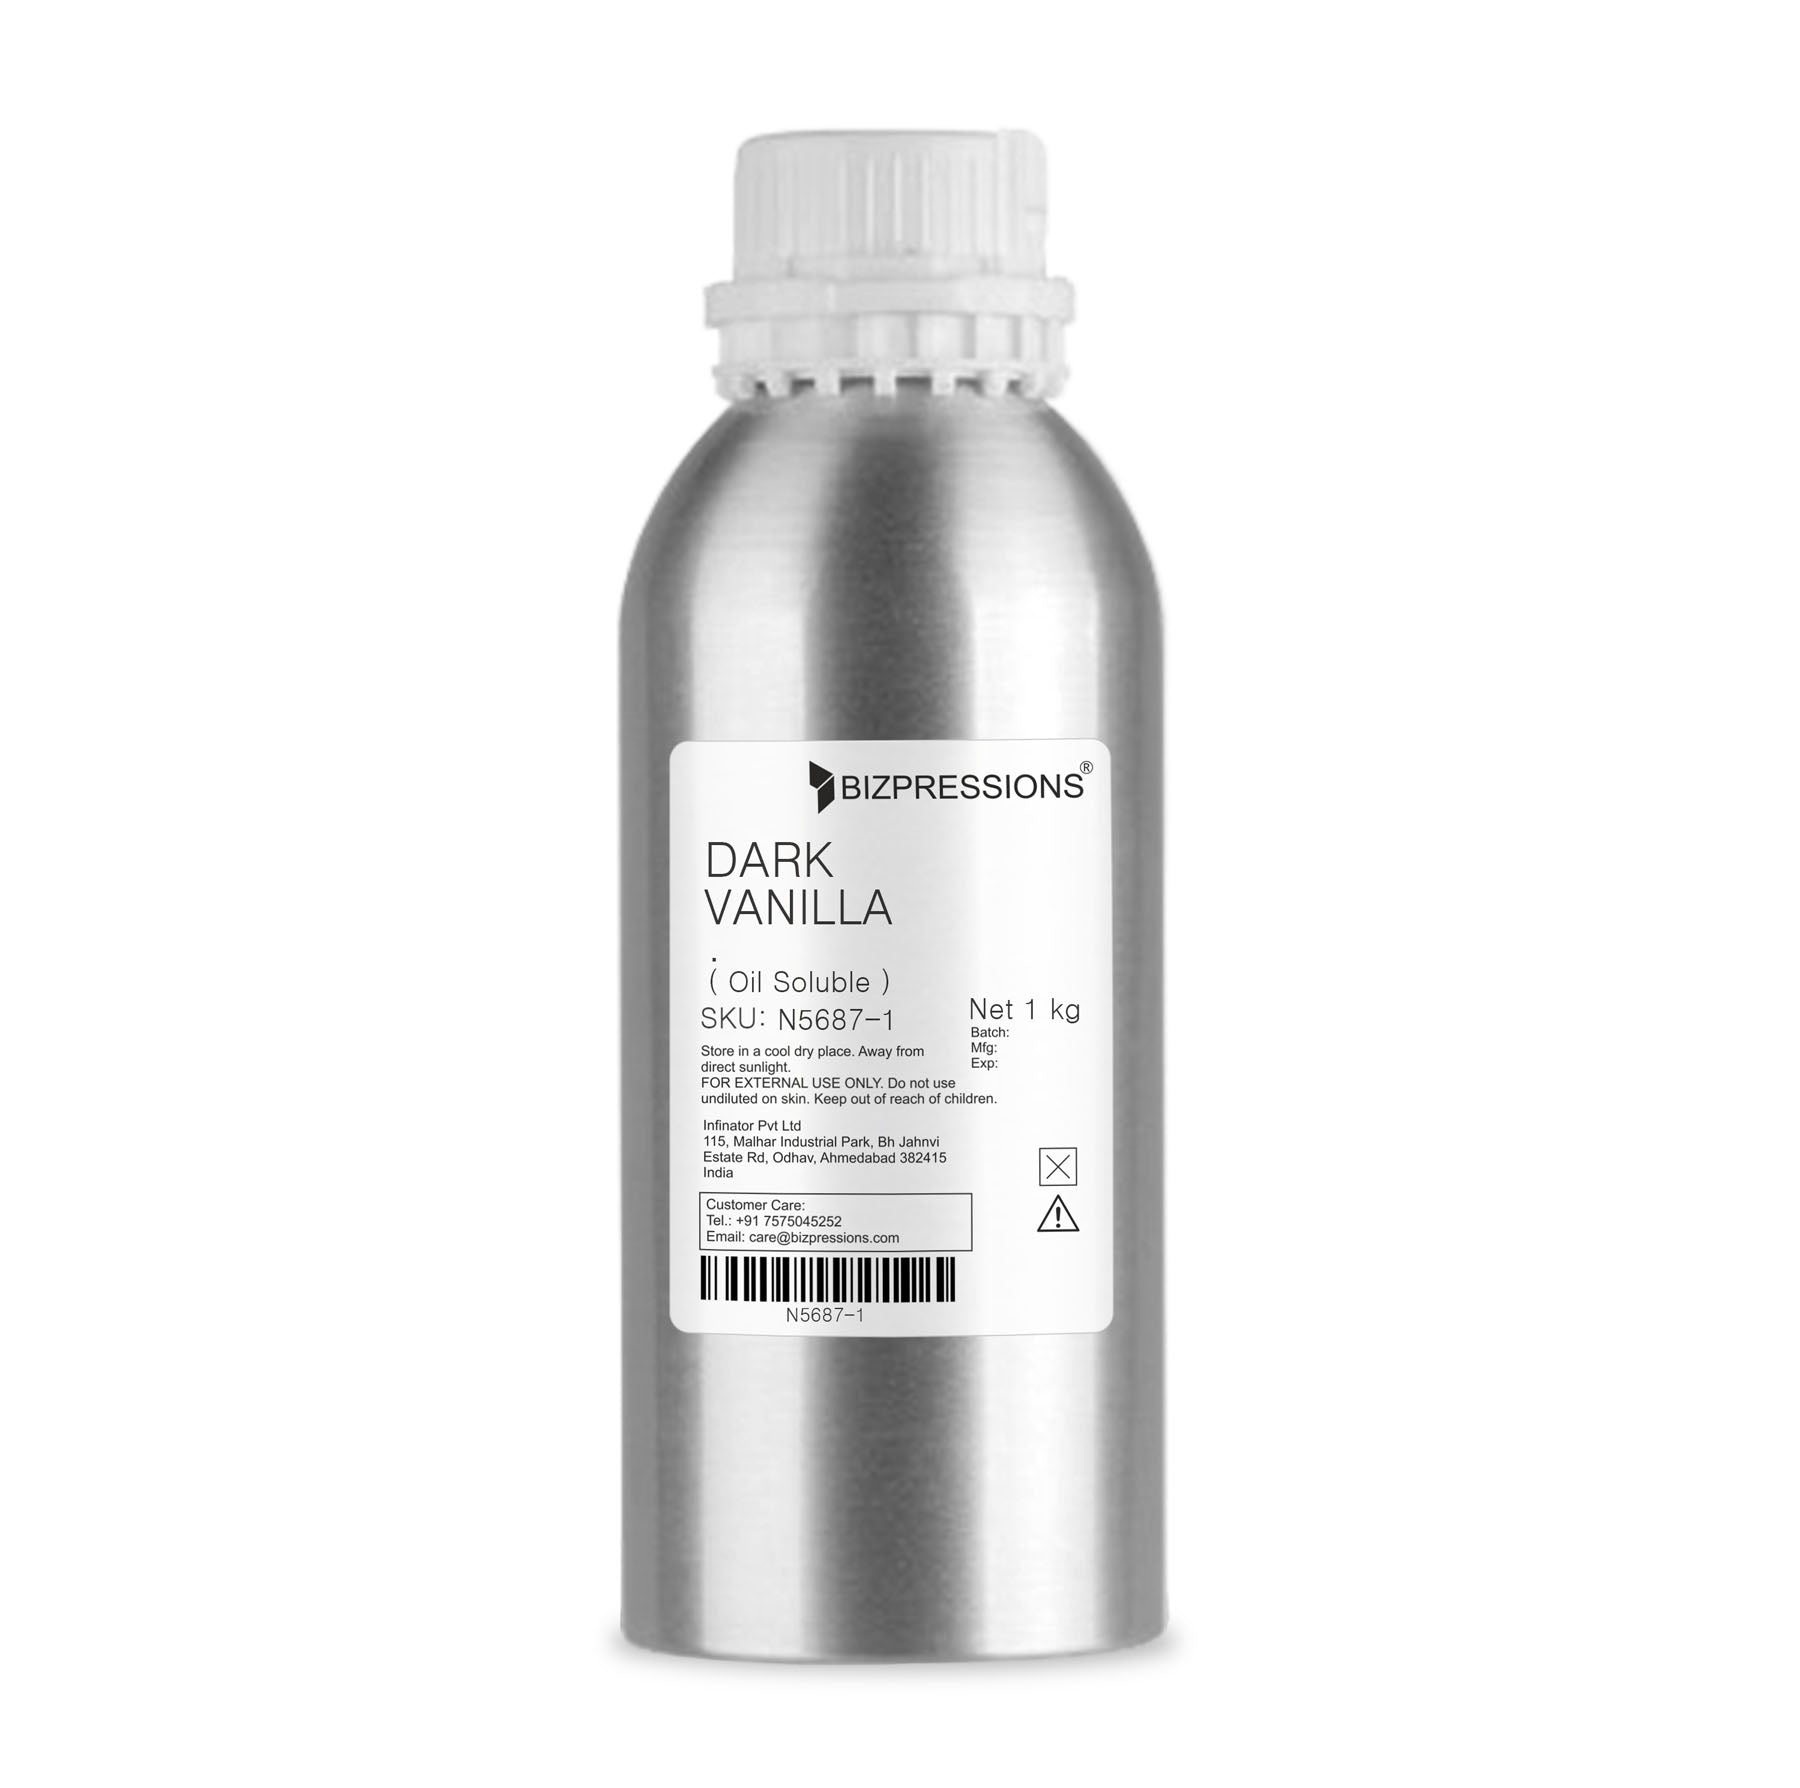 DARK VANILLA - Fragrance ( Oil Soluble ) - 1 kg